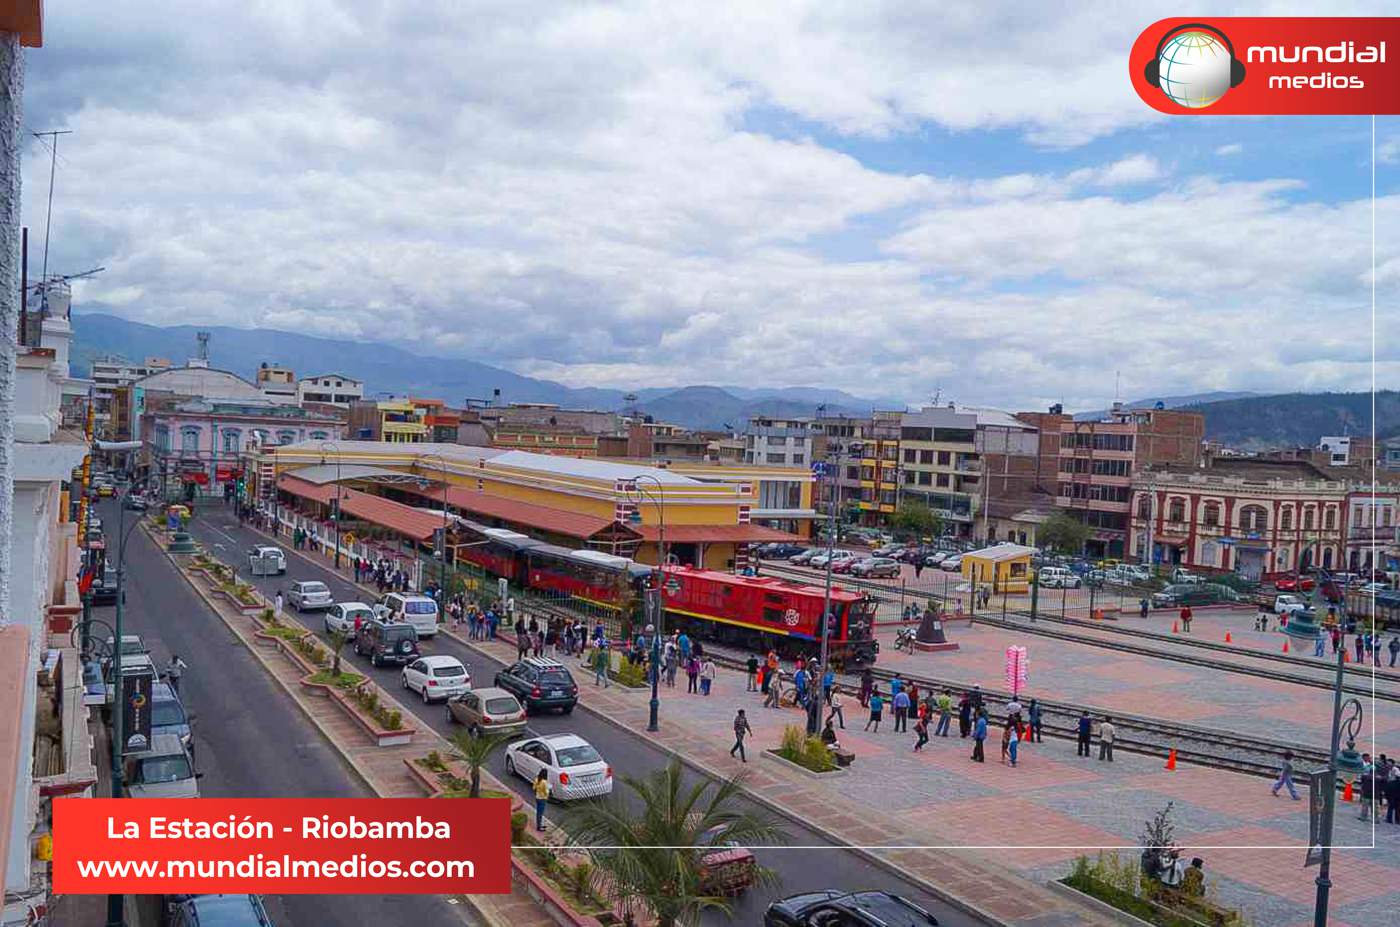 La Estación del Tren en Riobamba - Mundial Medios - Foto: @gcamelos